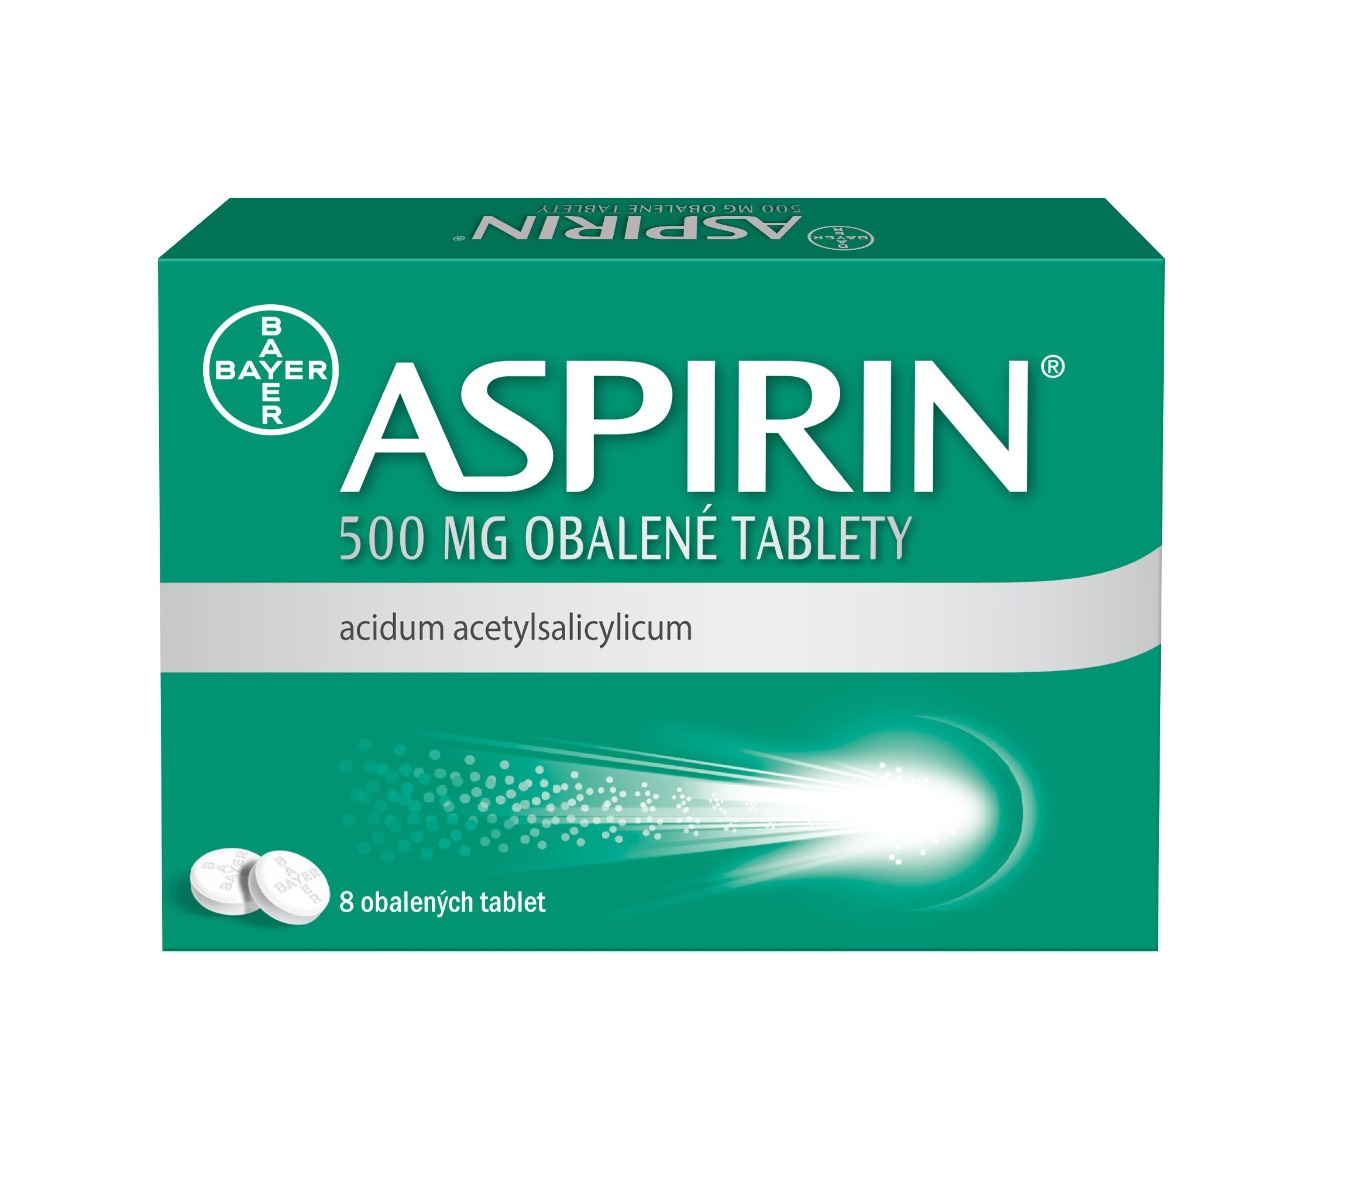 Aspirin 500 mg 8 tablet Aspirin